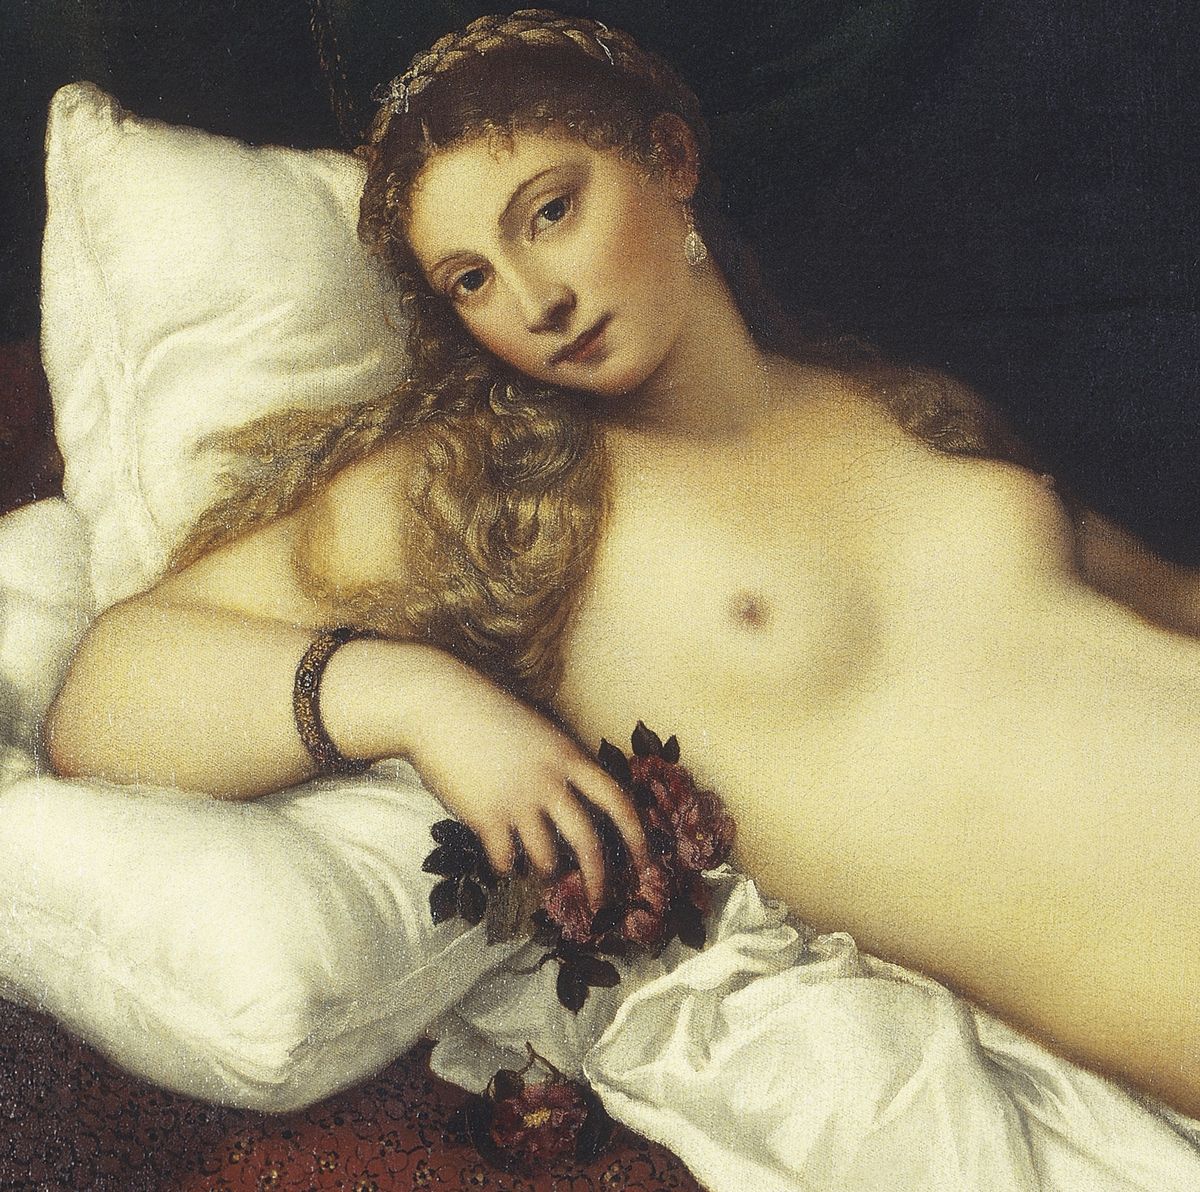 Venus of Urbino, 1538